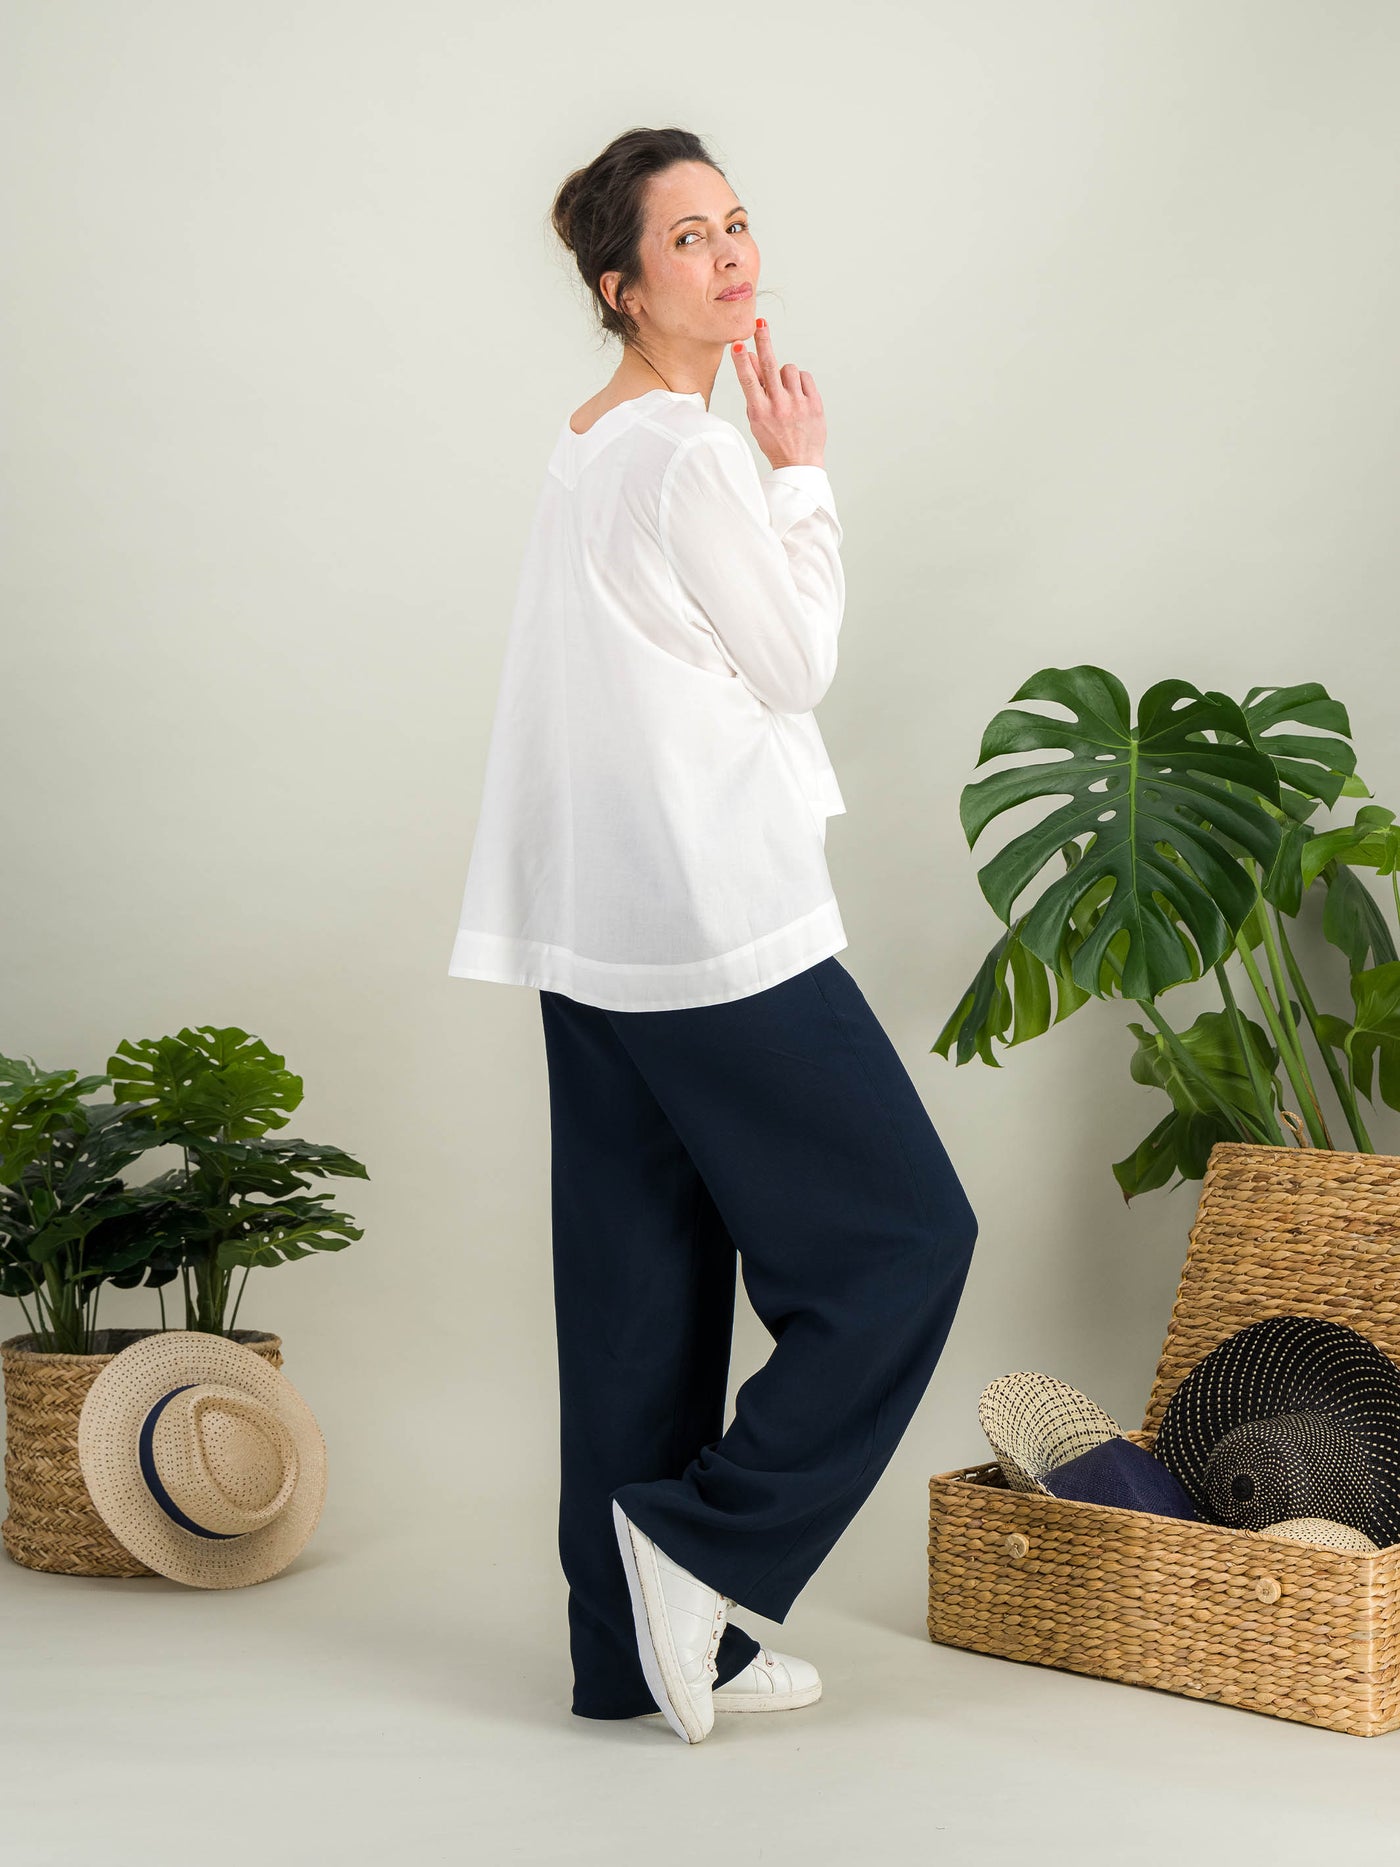 chemise blanche évasée en popeline de coton blanc avec des manches longues pour un look casual chic porté avec un pantalon à pont bleu marine chic style marin